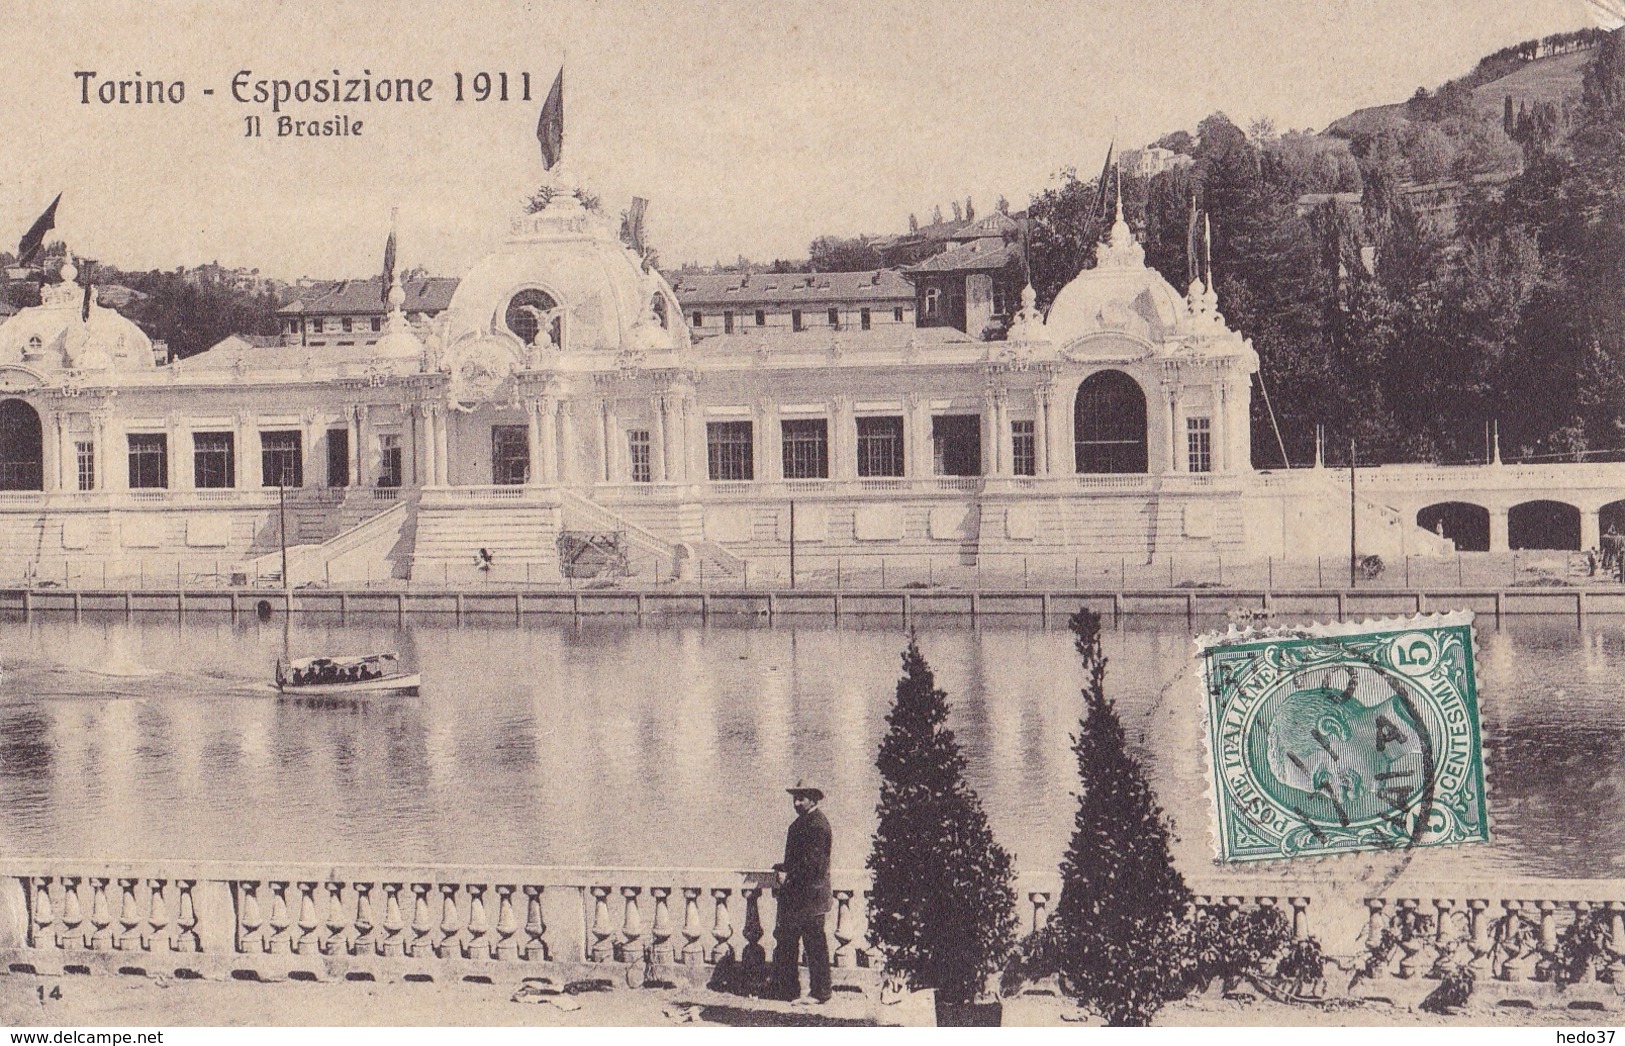 Torino - Esposizione 1911 - Exposiciones